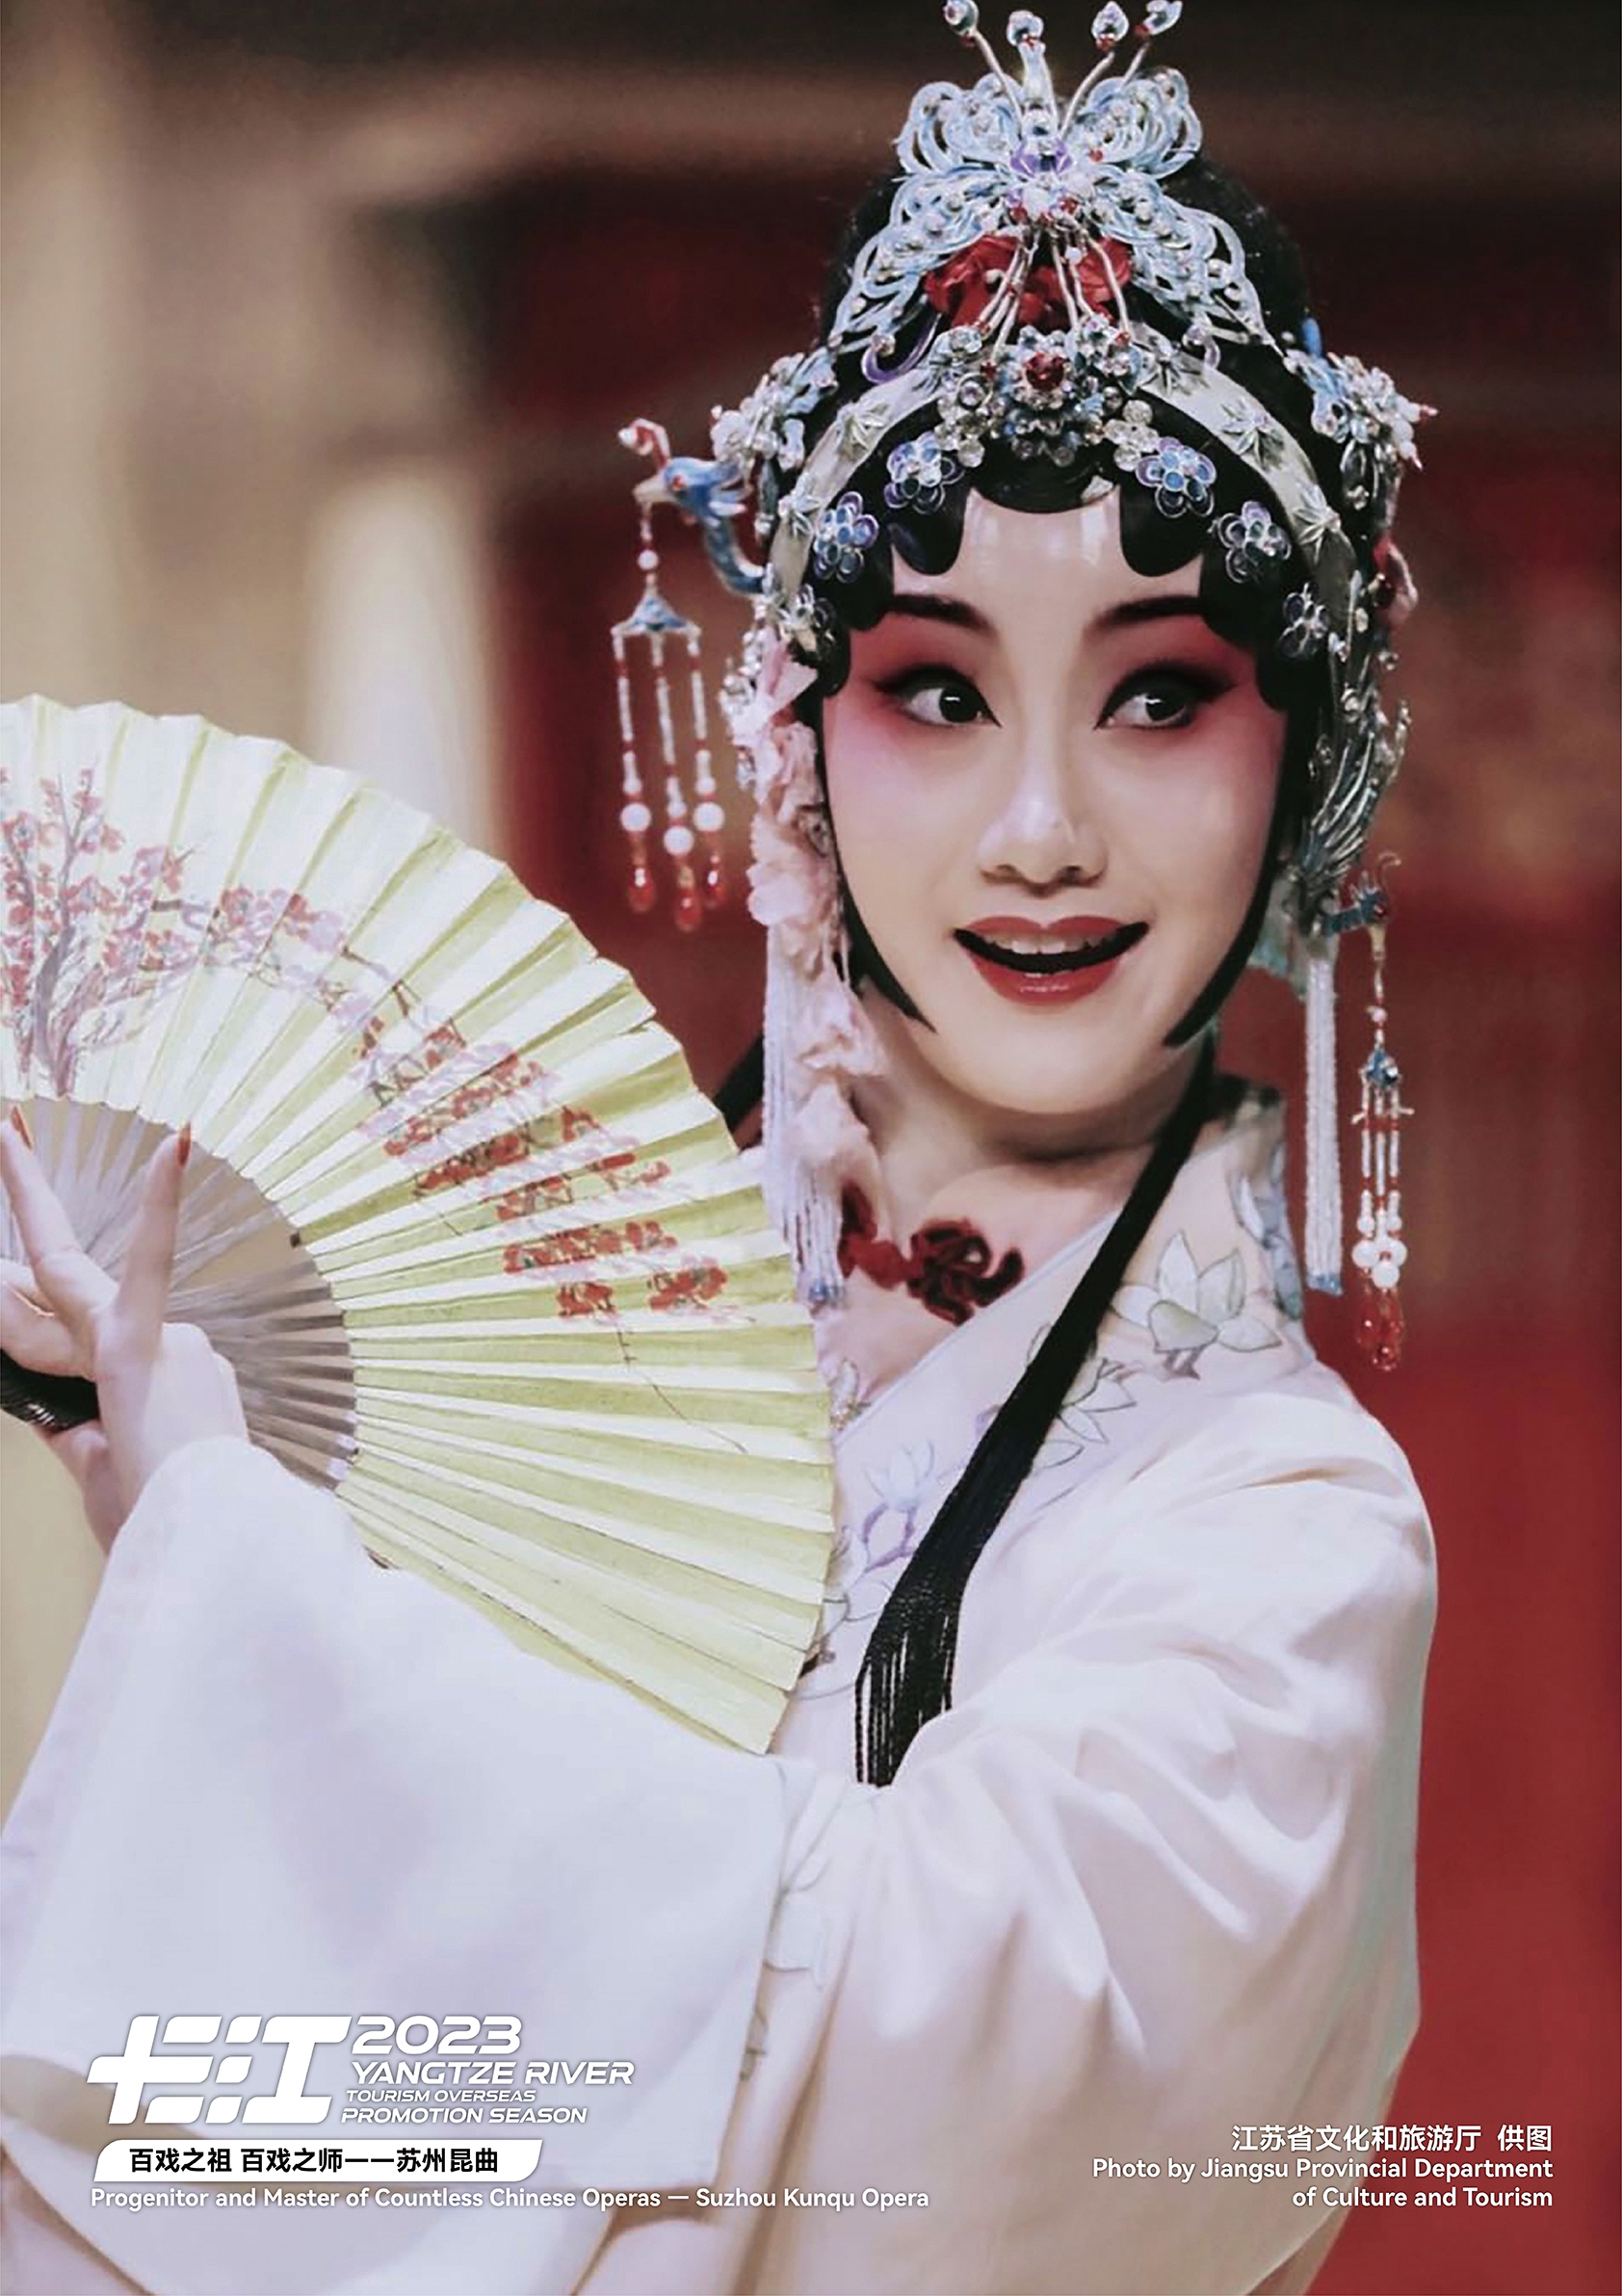 Progenitor and master of Chinese opera — Suzhou Kunqu Opera /Photo provided to CGTN